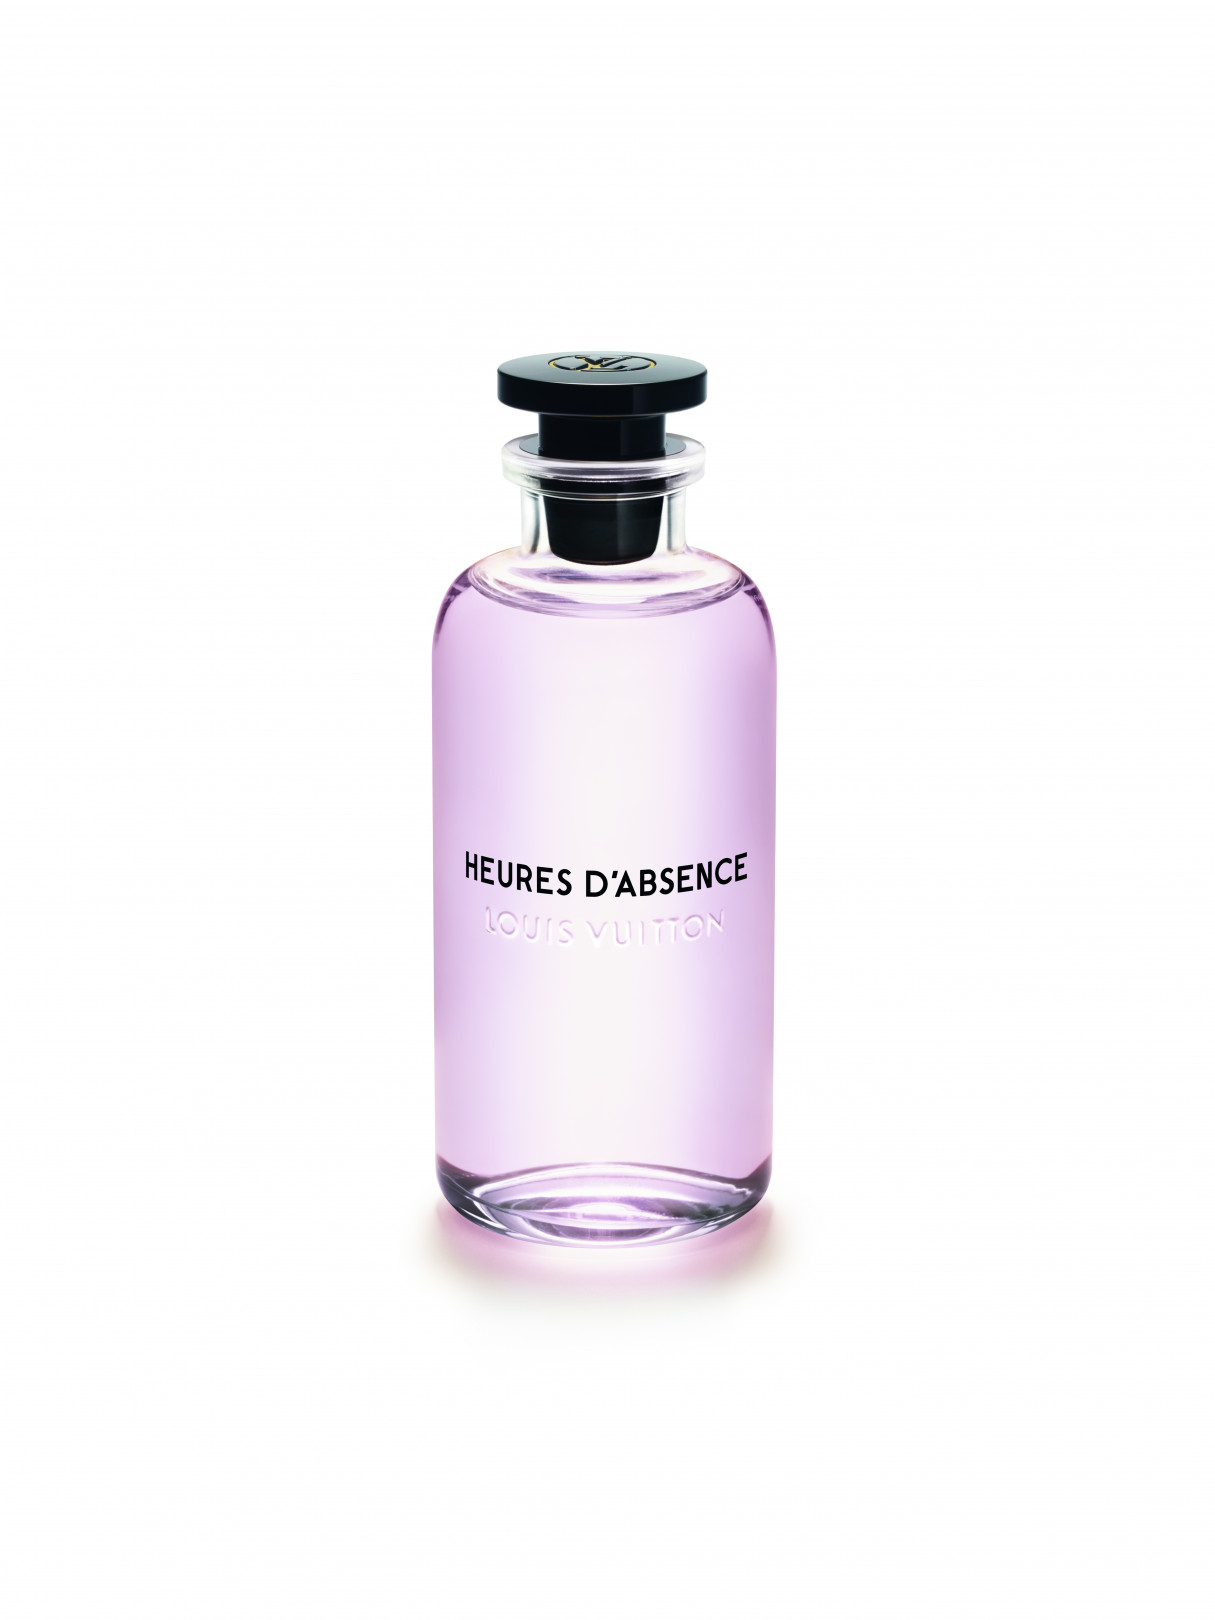 ルイ・ヴィトンの新作フレグランス「ウール・ダプサンス」発売、ブーケのような花々の香り | PHOTO(11/14) | FASHION